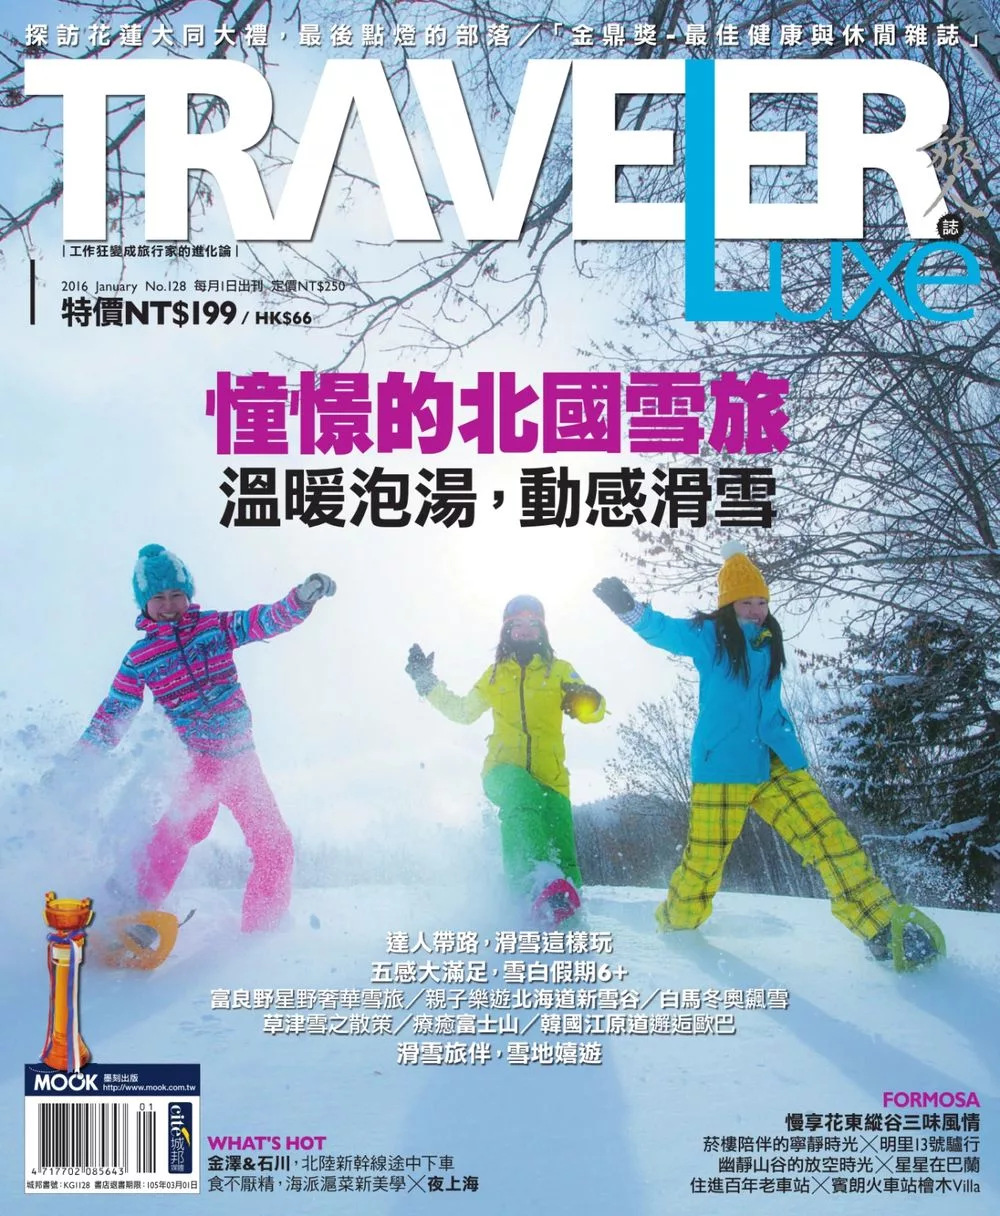 TRAVELER LUXE 旅人誌 01月號/2016第128期 (電子雜誌)